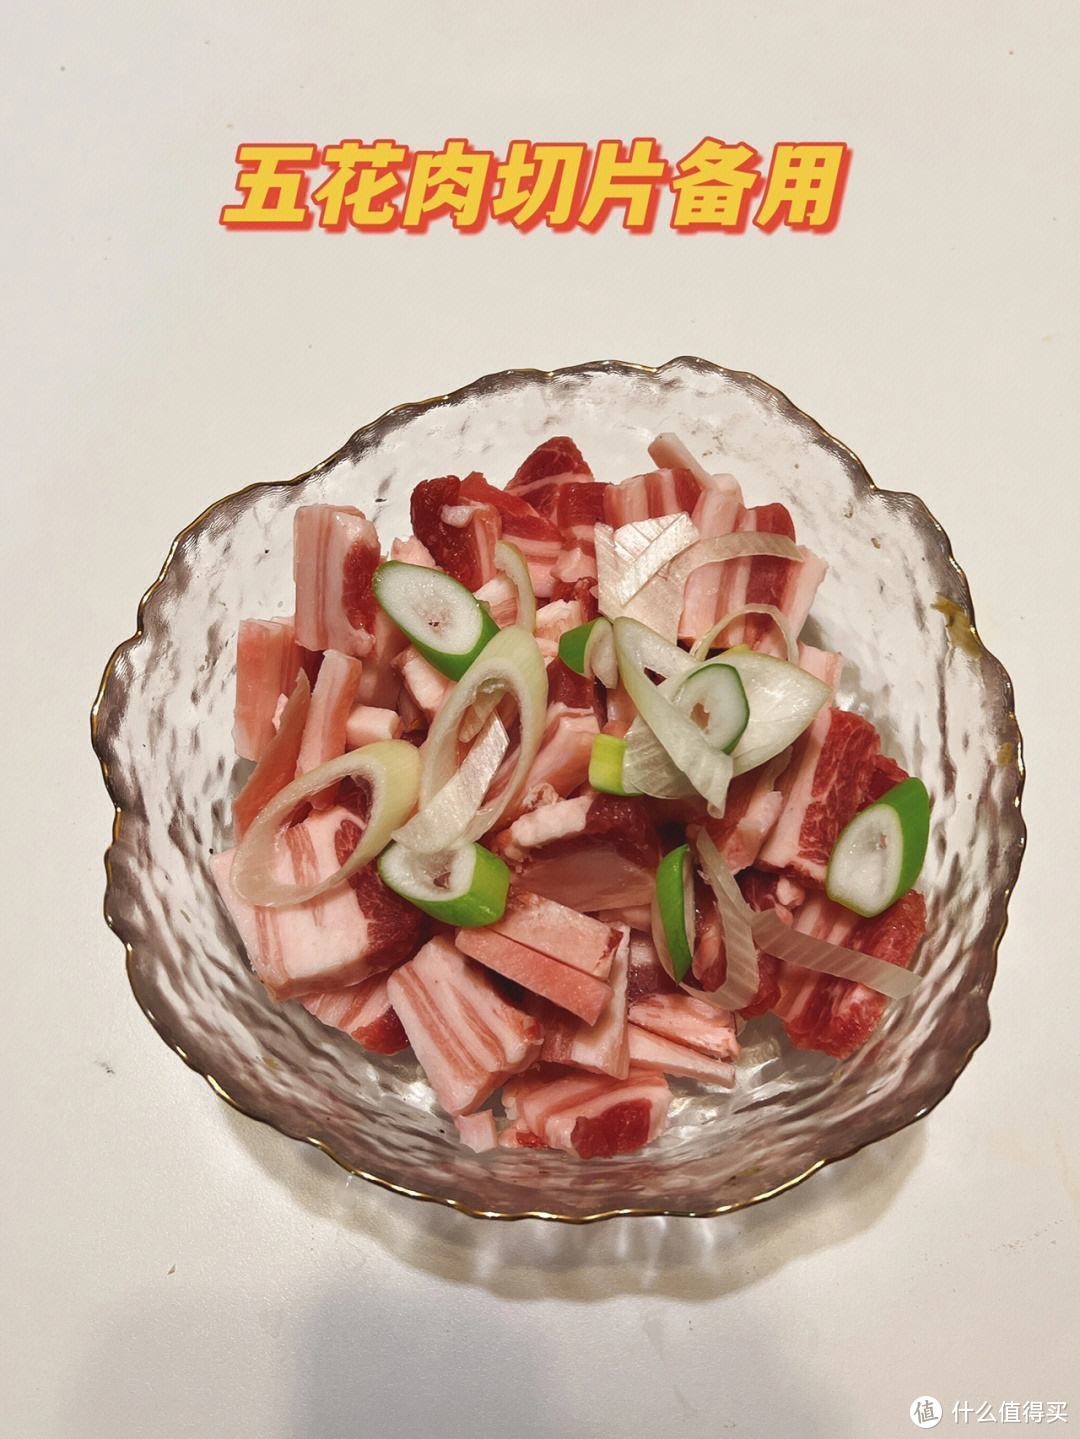 特别好吃的韩式烤肉制作方法